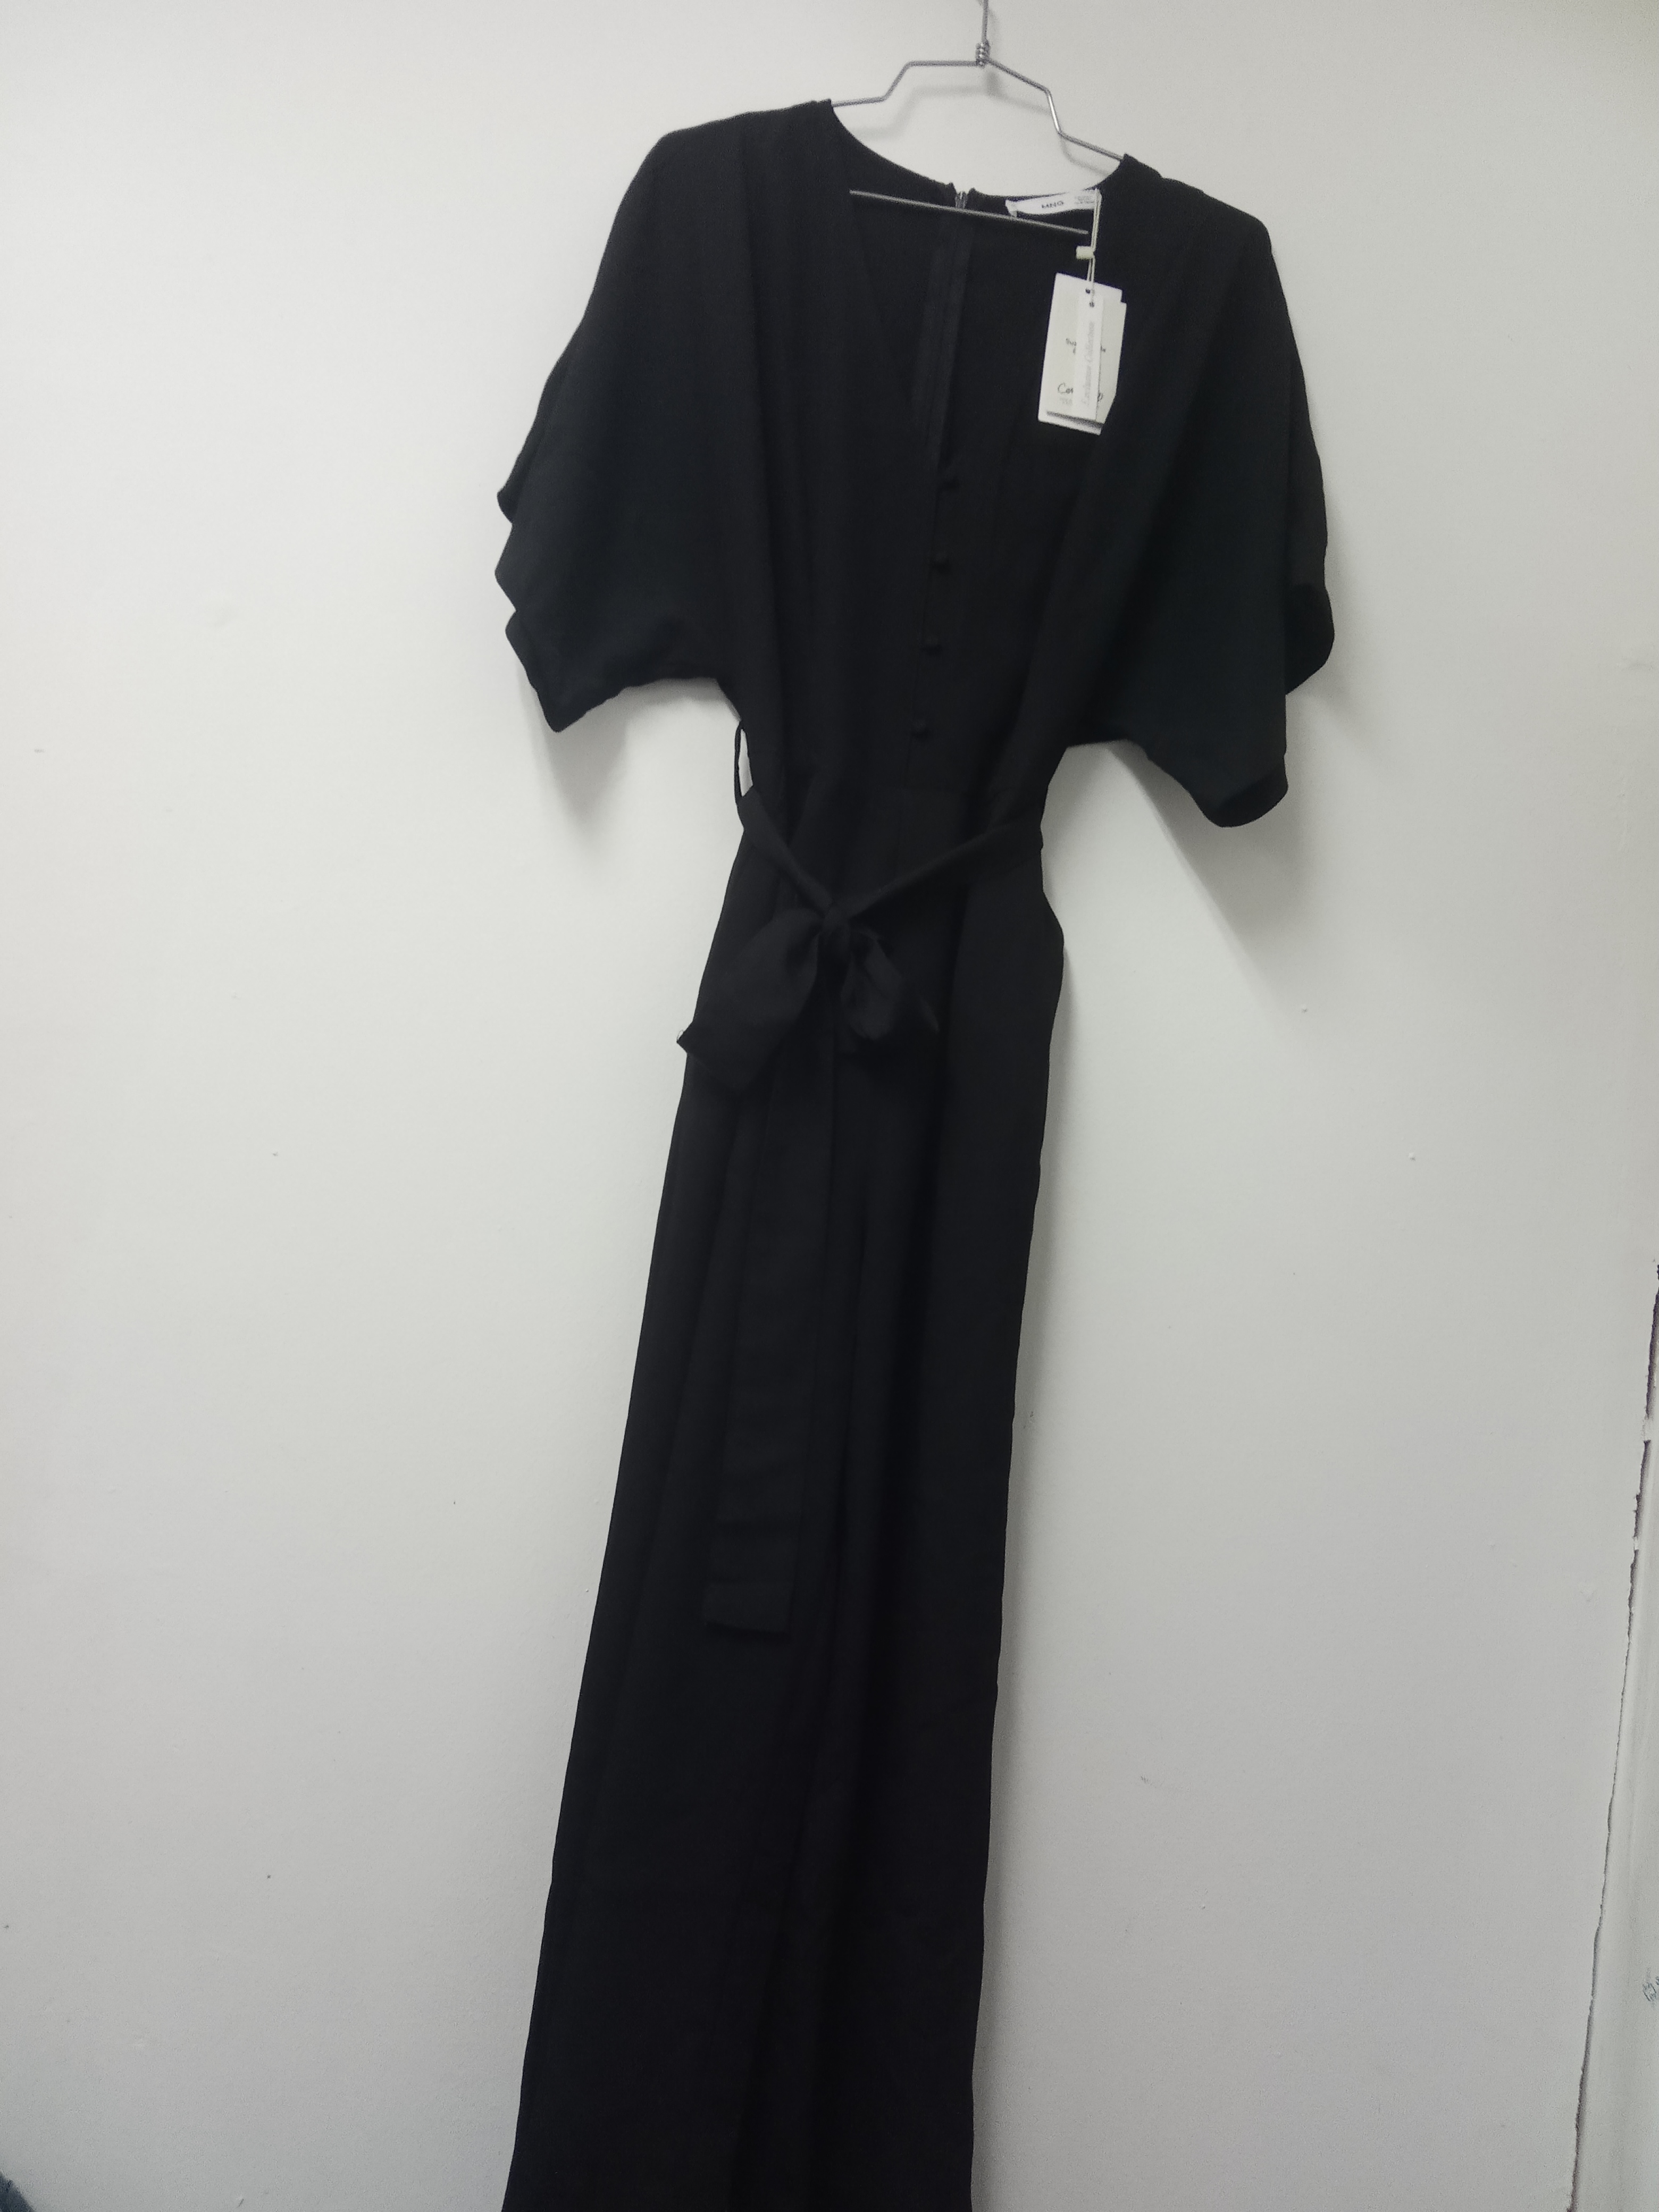 תמונה 3 ,אוברול מנגו שחור חדש סמול למכירה בתל אביב ביגוד ואביזרים  שמלות וחליפות